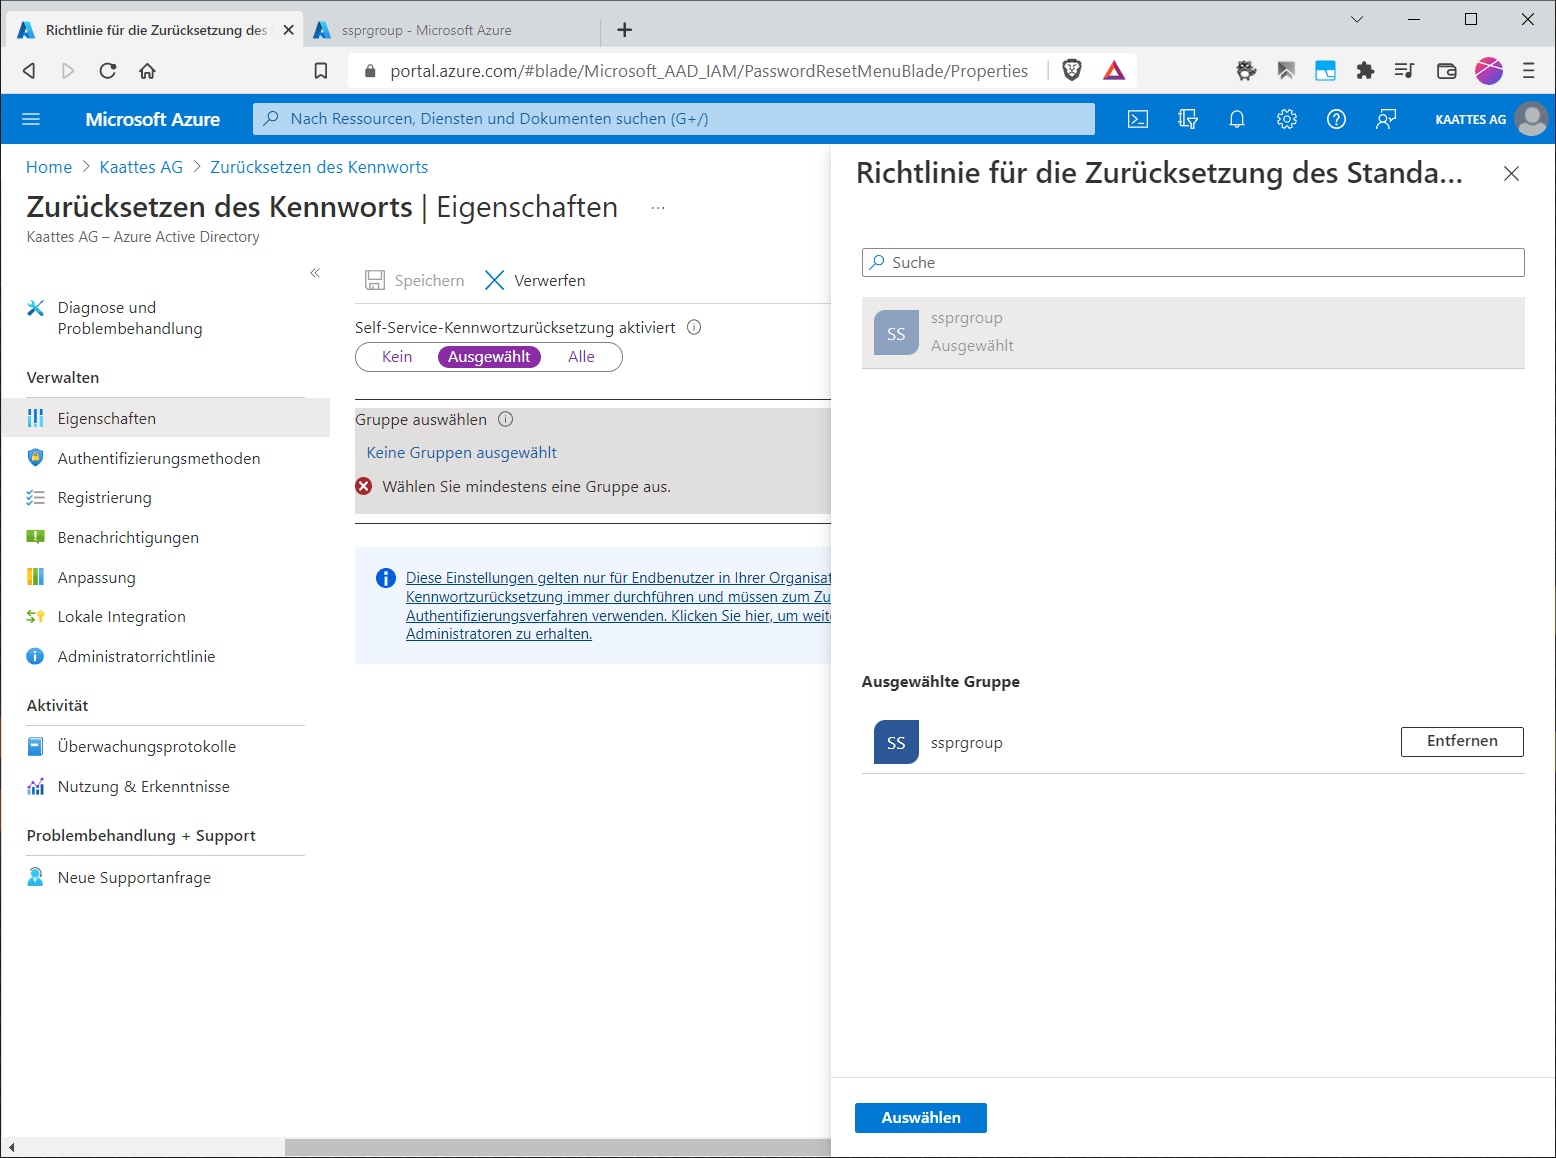 Überprüfen Sie die Eingabe des Passworts: Stellen Sie sicher, dass Sie das richtige Passwort für Ihr Azure AD-Konto eingeben.
Überprüfen Sie die Verbindungseinstellungen: Stellen Sie sicher, dass Sie eine stabile Internetverbindung haben und dass die Servereinstellungen in Outlook korrekt konfiguriert sind.